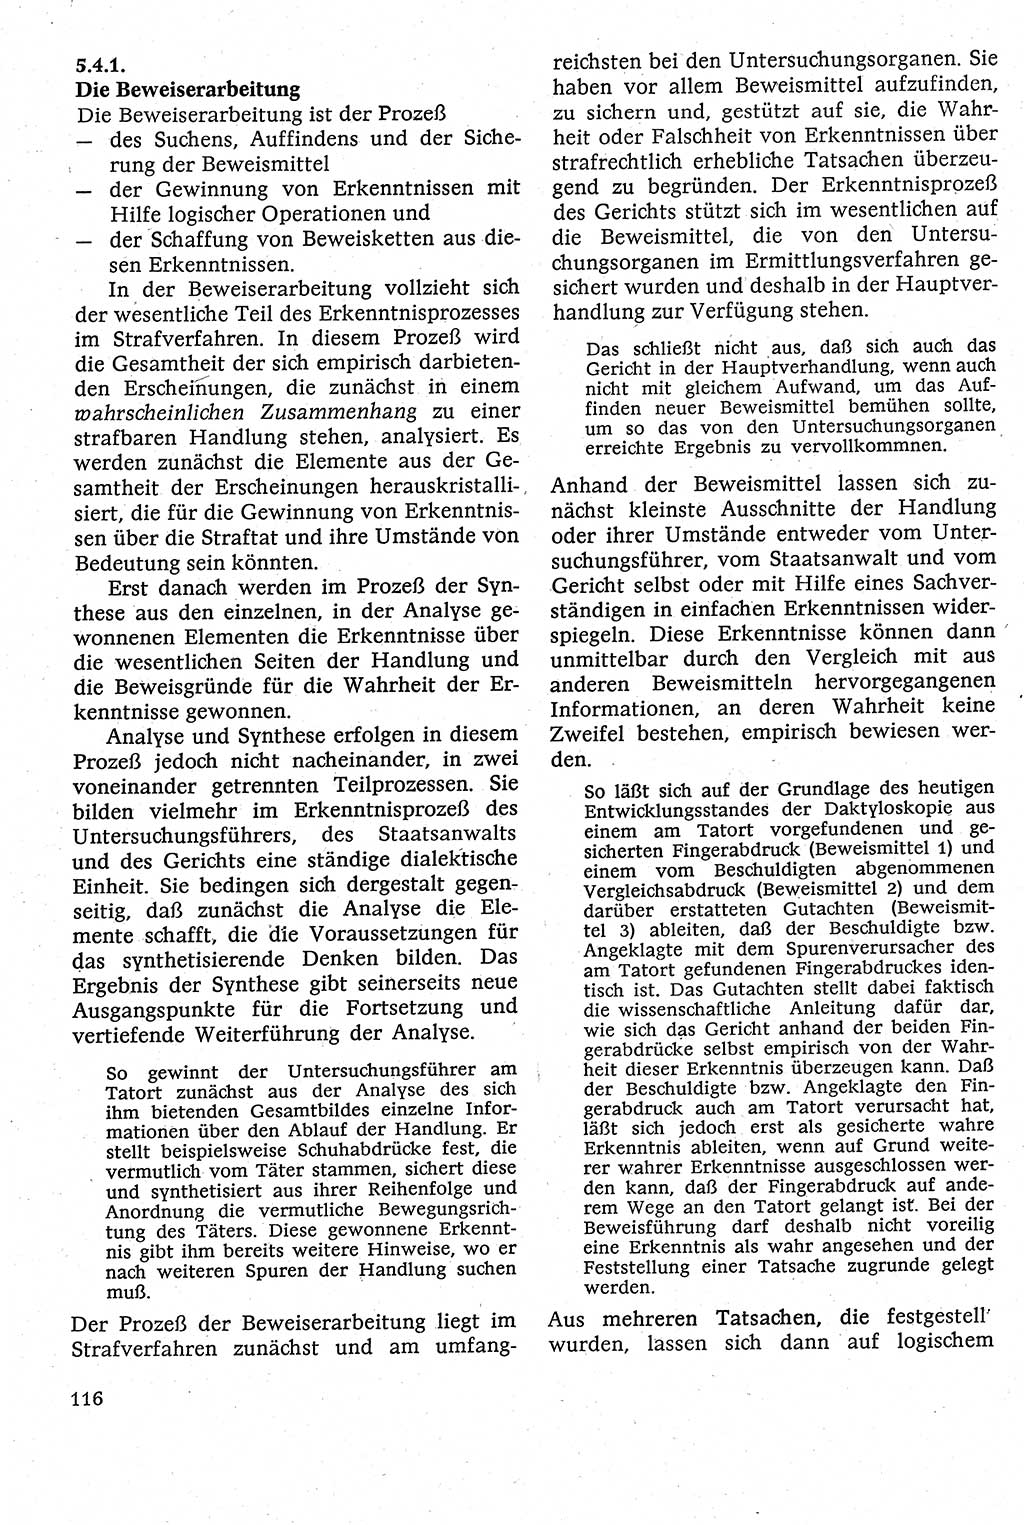 Strafverfahrensrecht [Deutsche Demokratische Republik (DDR)], Lehrbuch 1982, Seite 116 (Strafverf.-R. DDR Lb. 1982, S. 116)